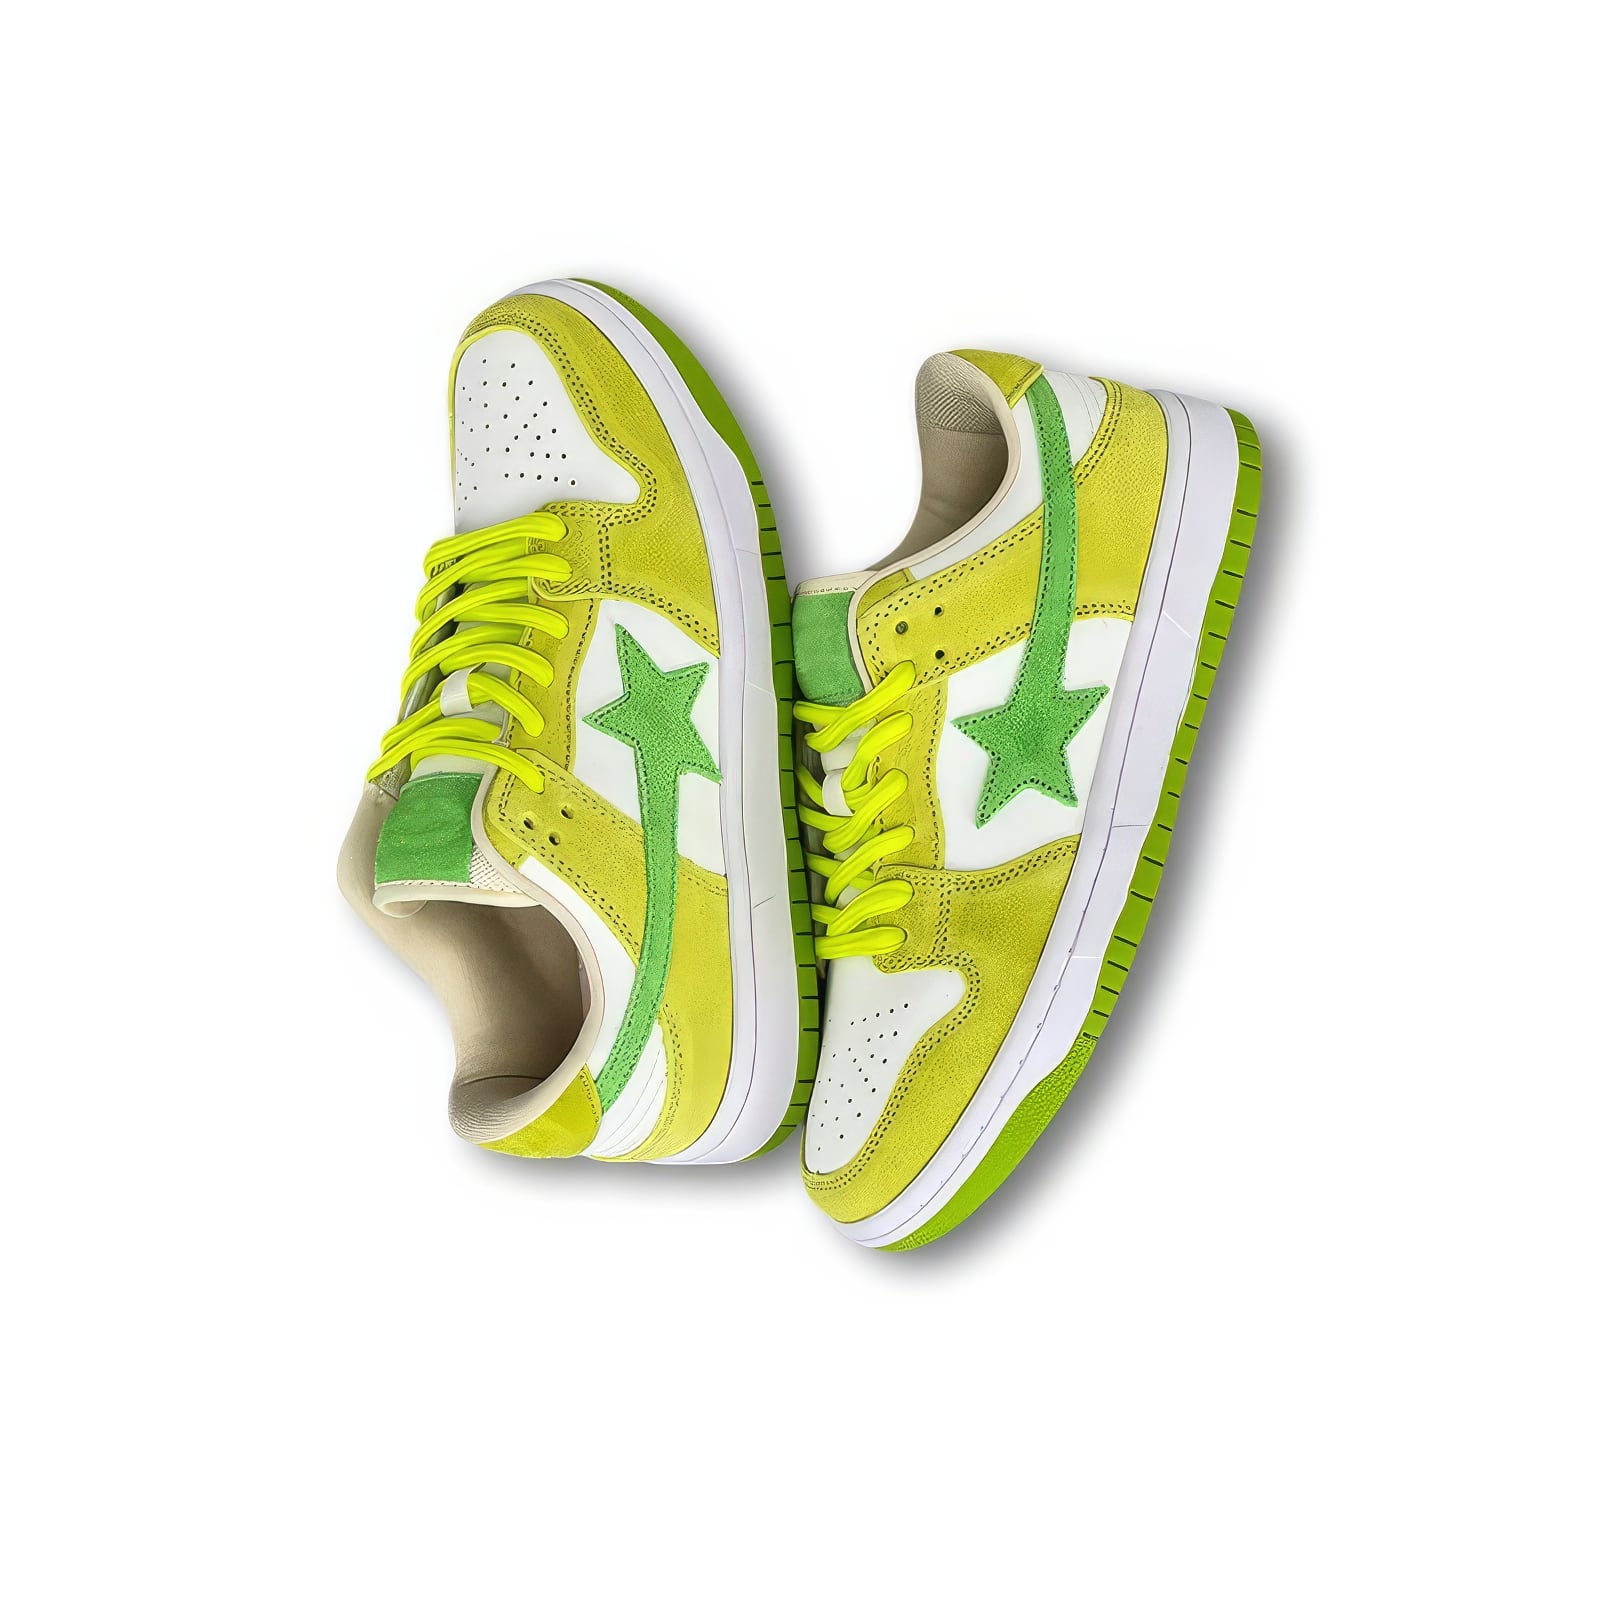 Shooting Star Aesthetic Sneakers, EU42 (US10.0) / Brown/Green